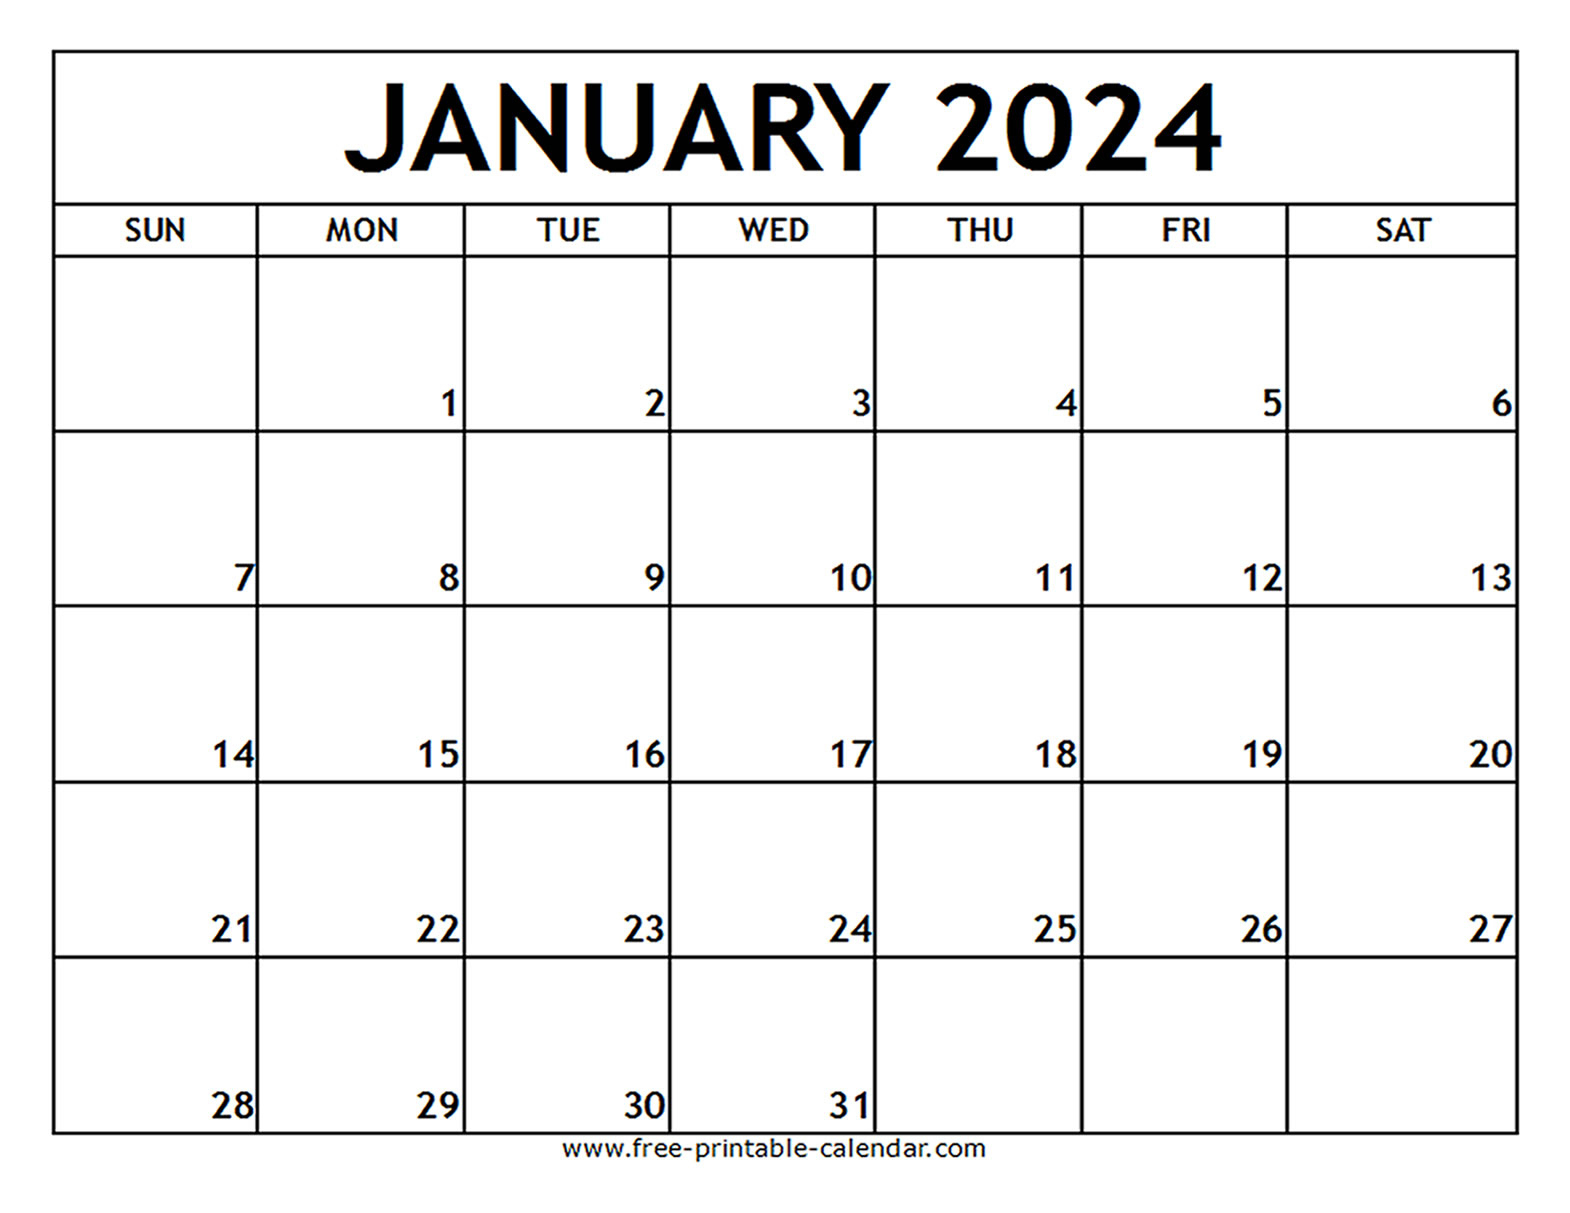 January 2024 Printable Calendar - Free-Printable-Calendar | 2024 Free Printable Calendars